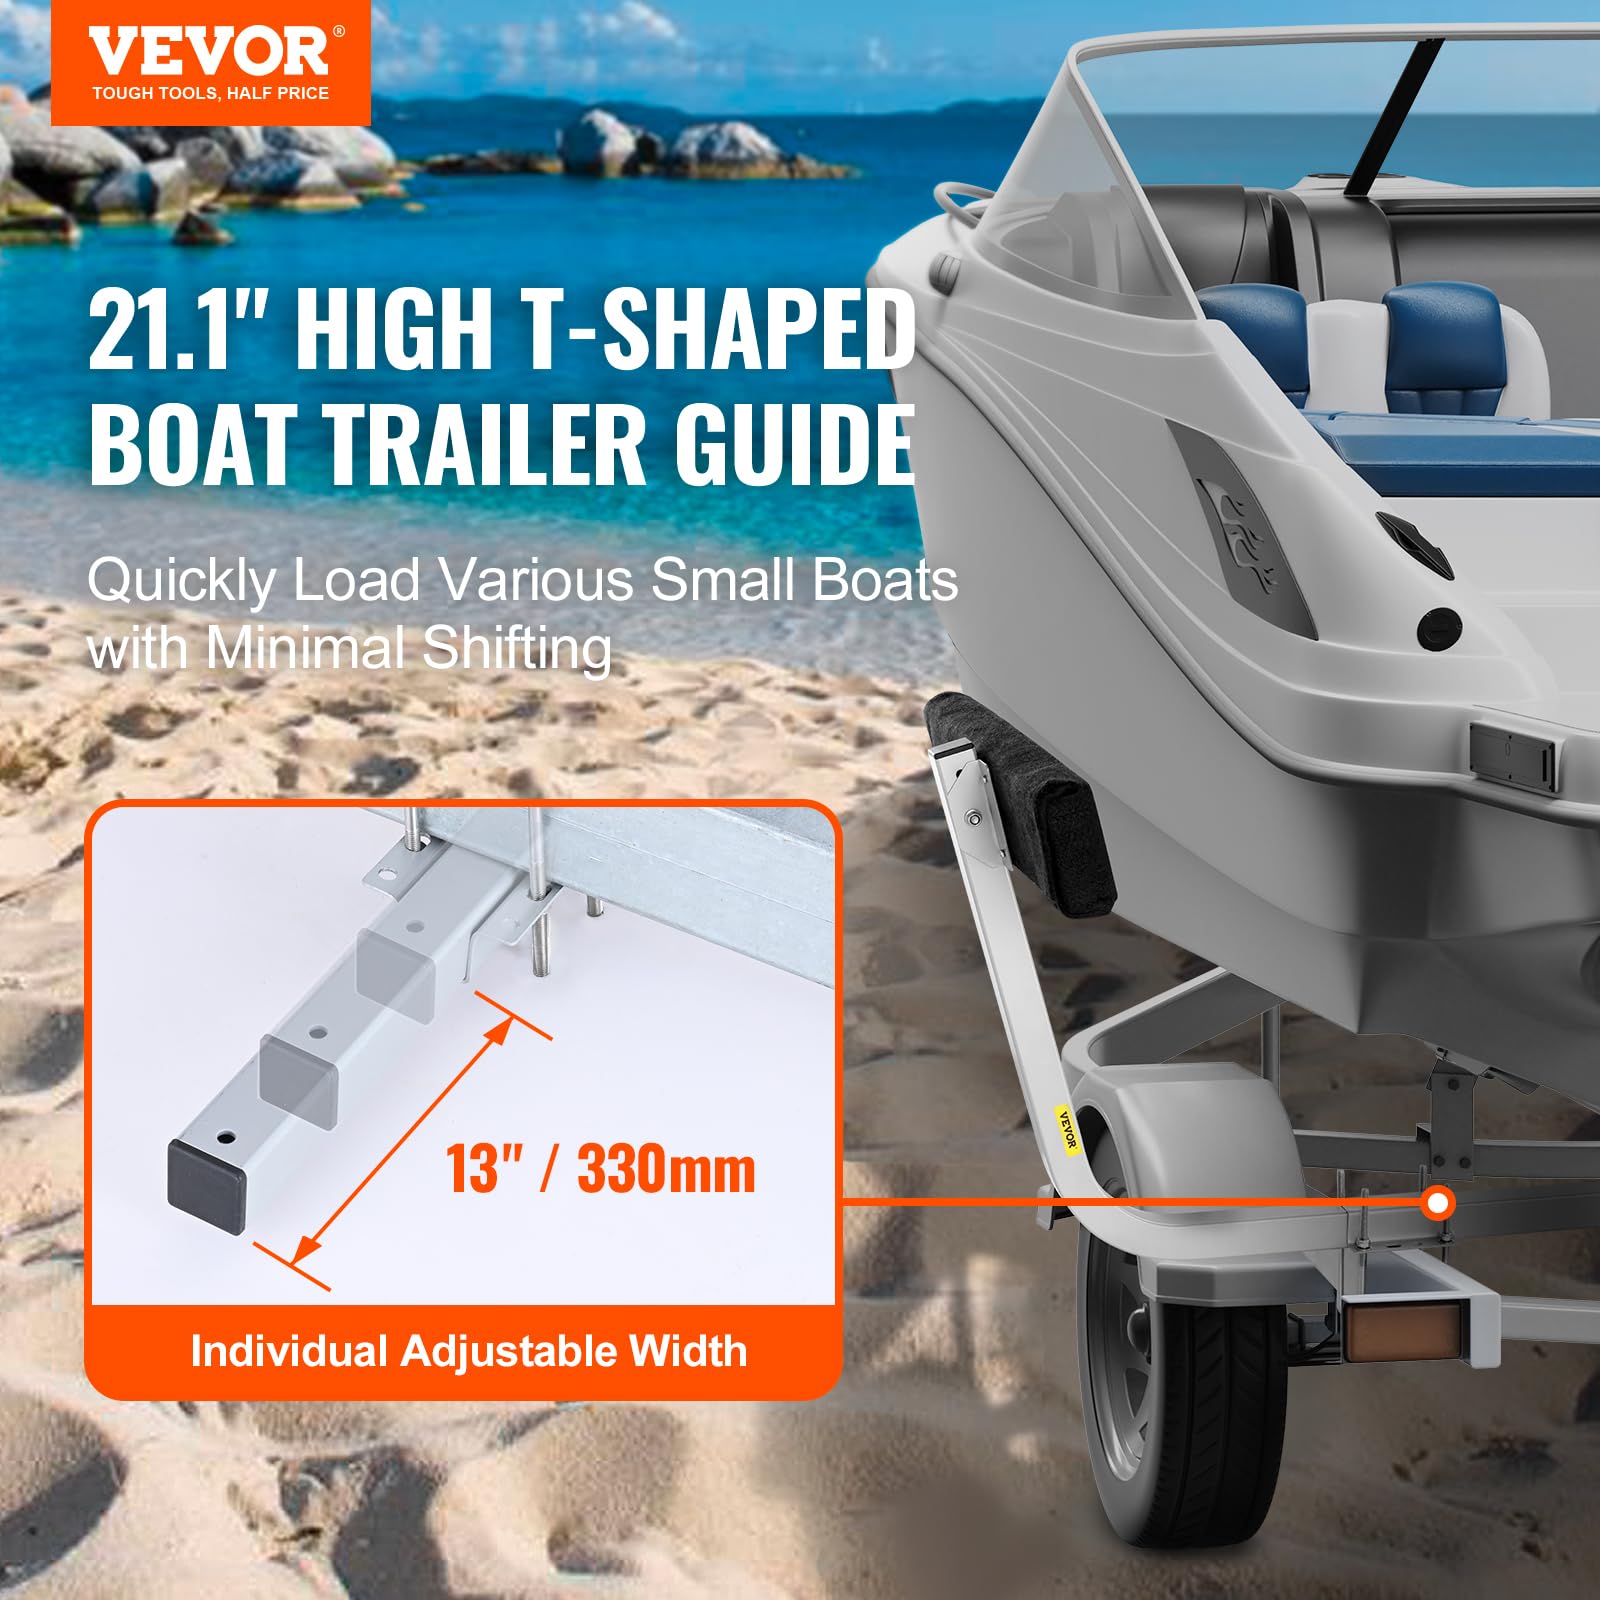 VEVOR Boat Trailer Guide, 27.6